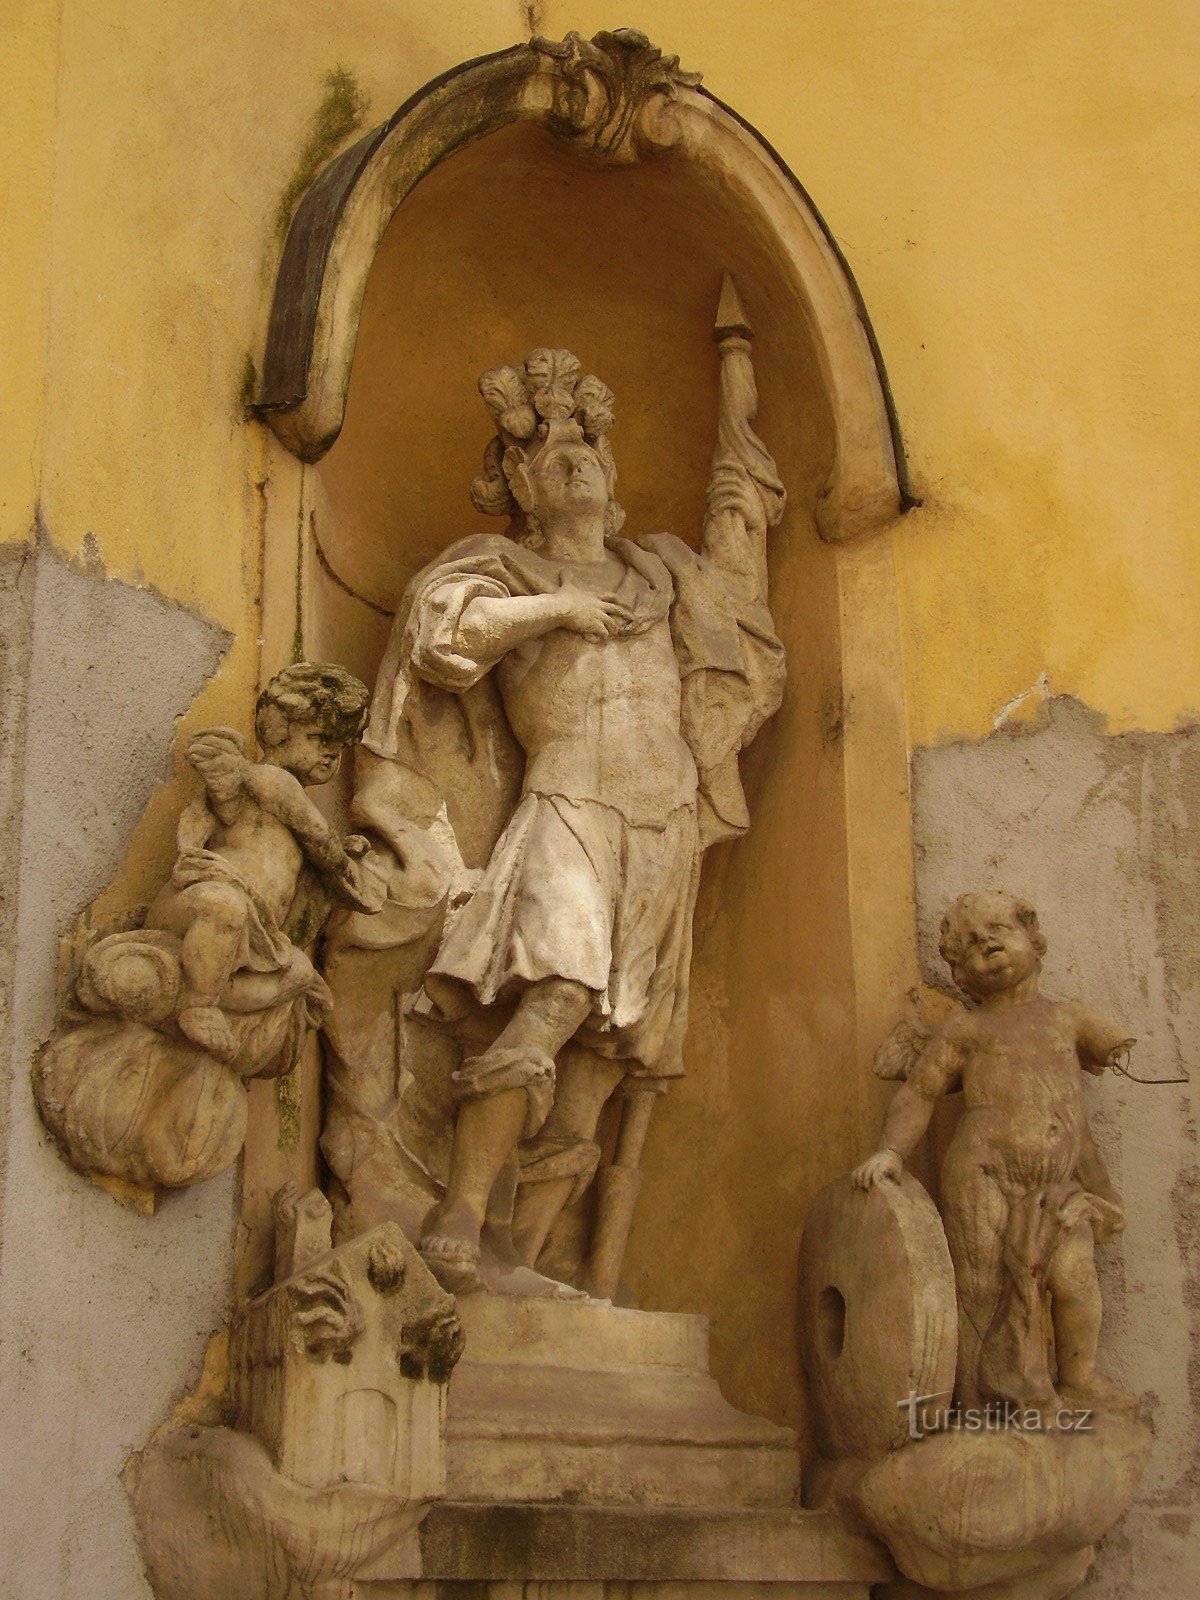 Statue af St. Floriána i Brno - Františkánská gade